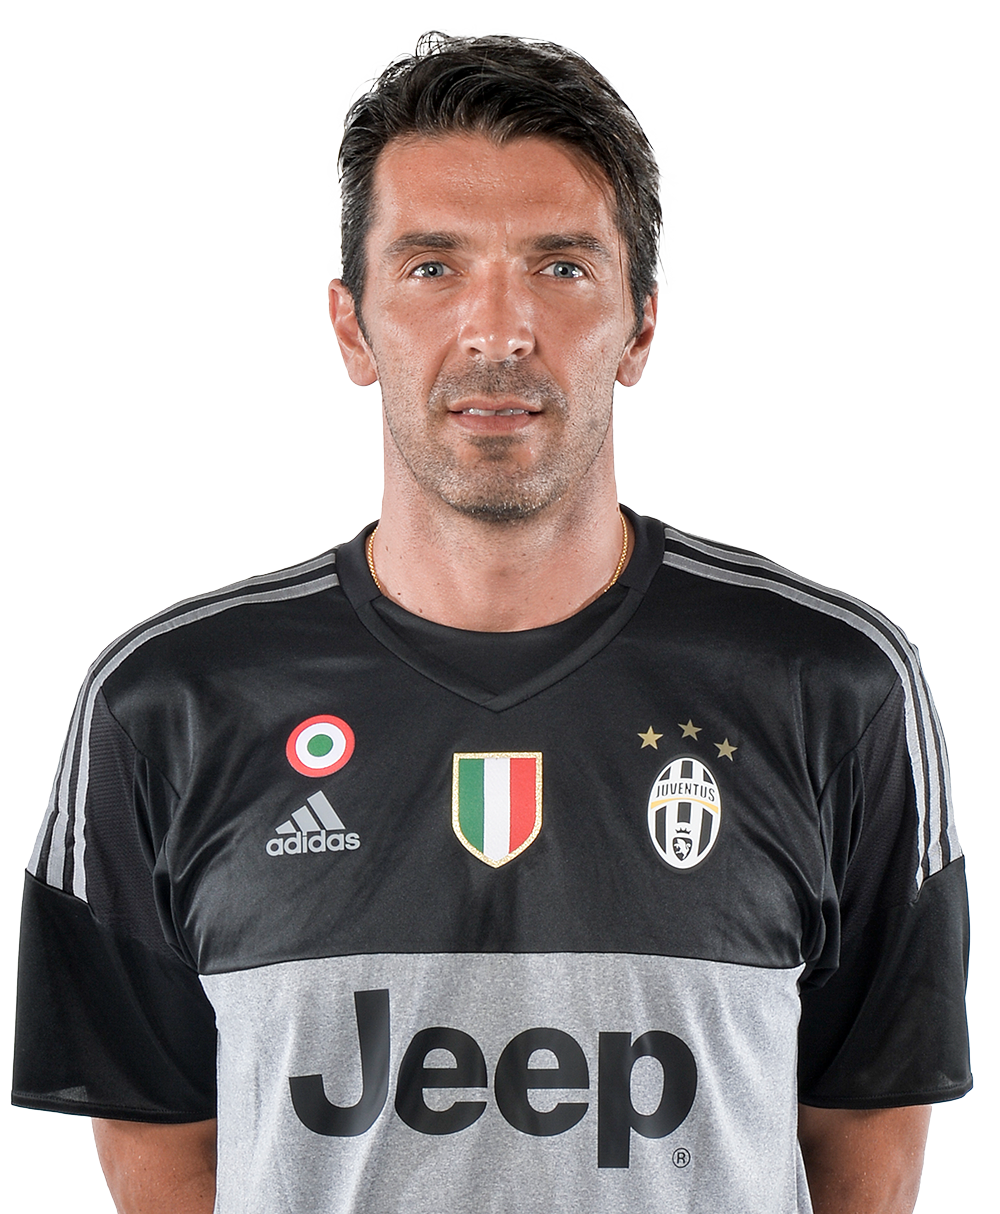 Gianluigi Buffon - Player profile